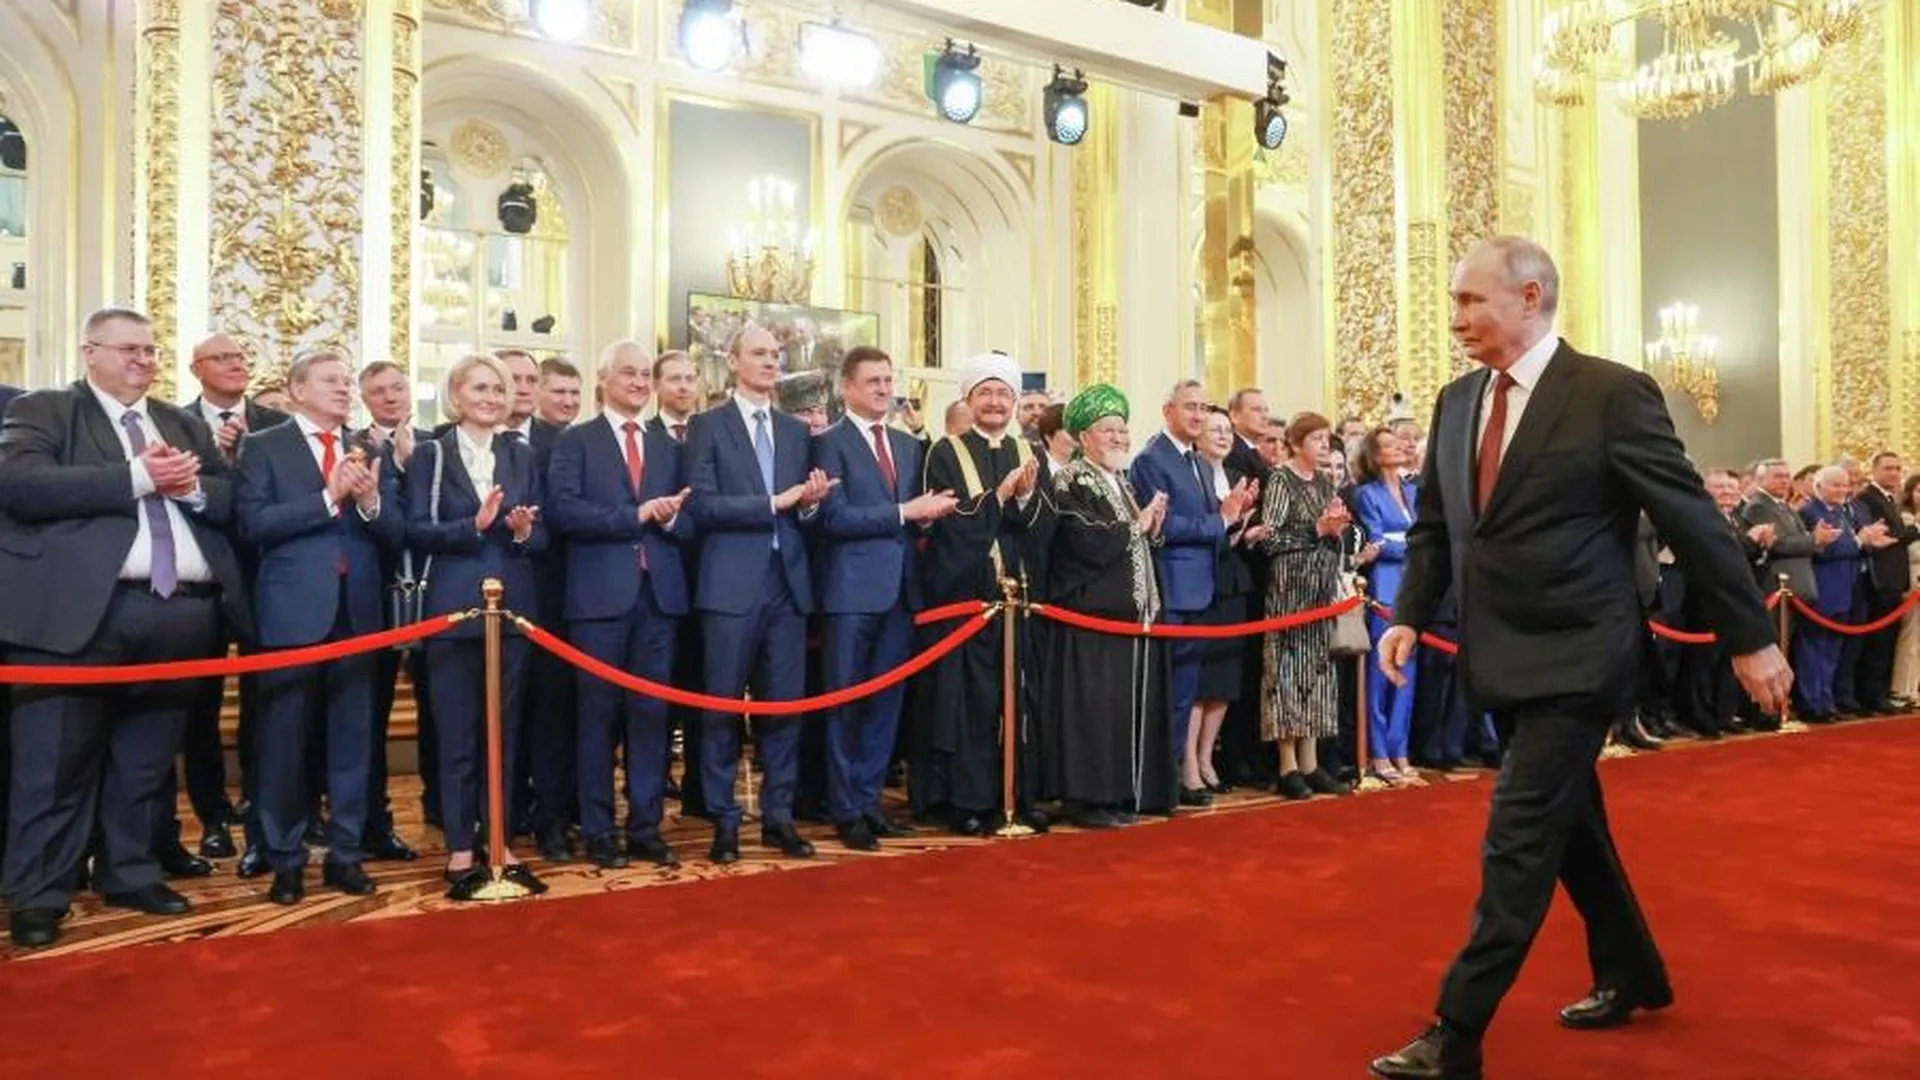 Ведомости: на инаугурации Путина были послы четырех недружественных стран